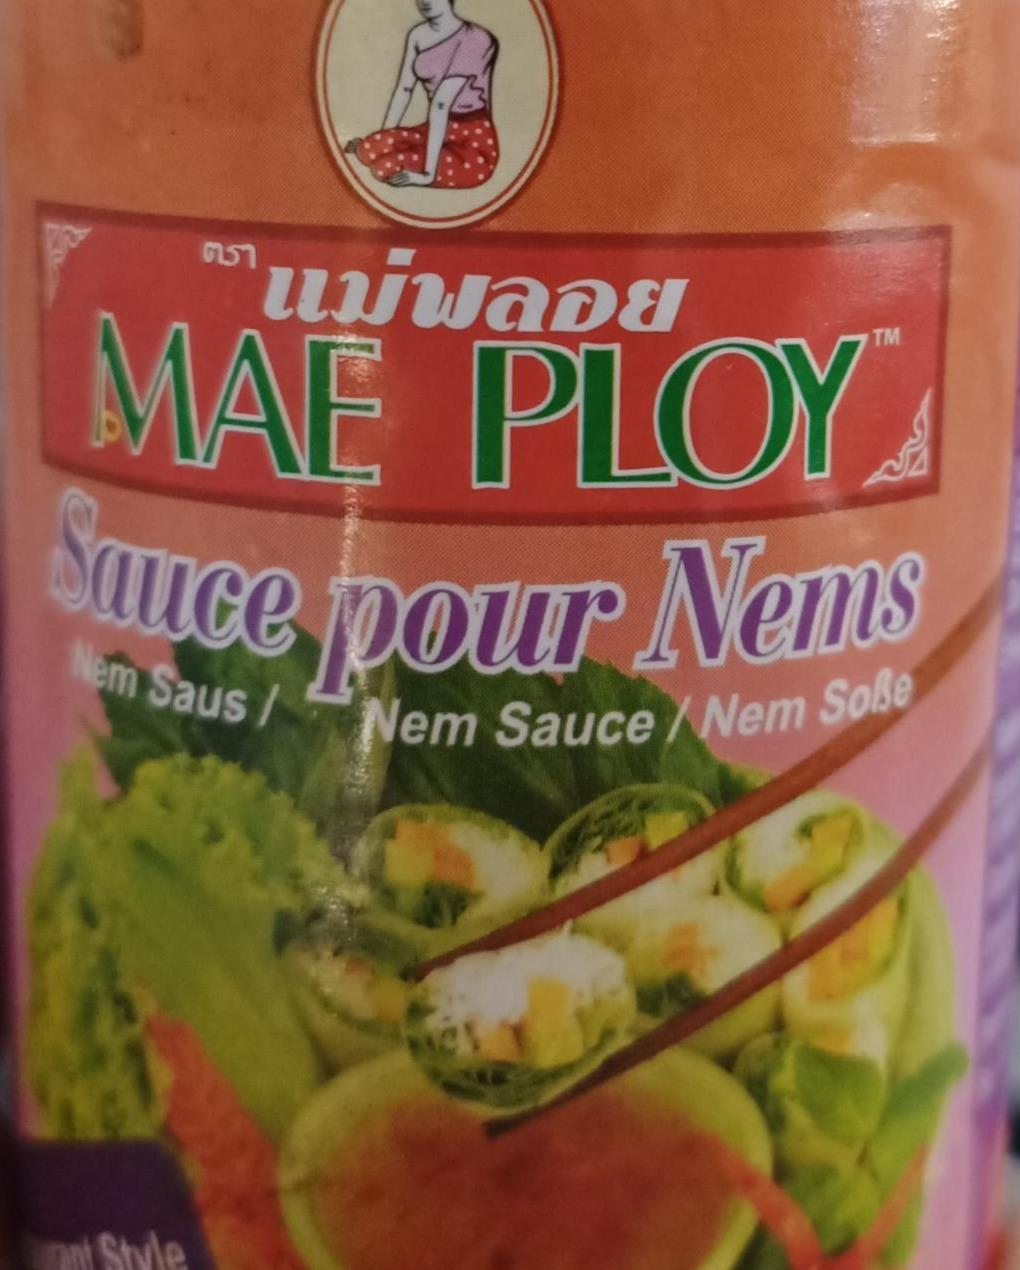 Fotografie - Sauce pour Nems Mae Ploy